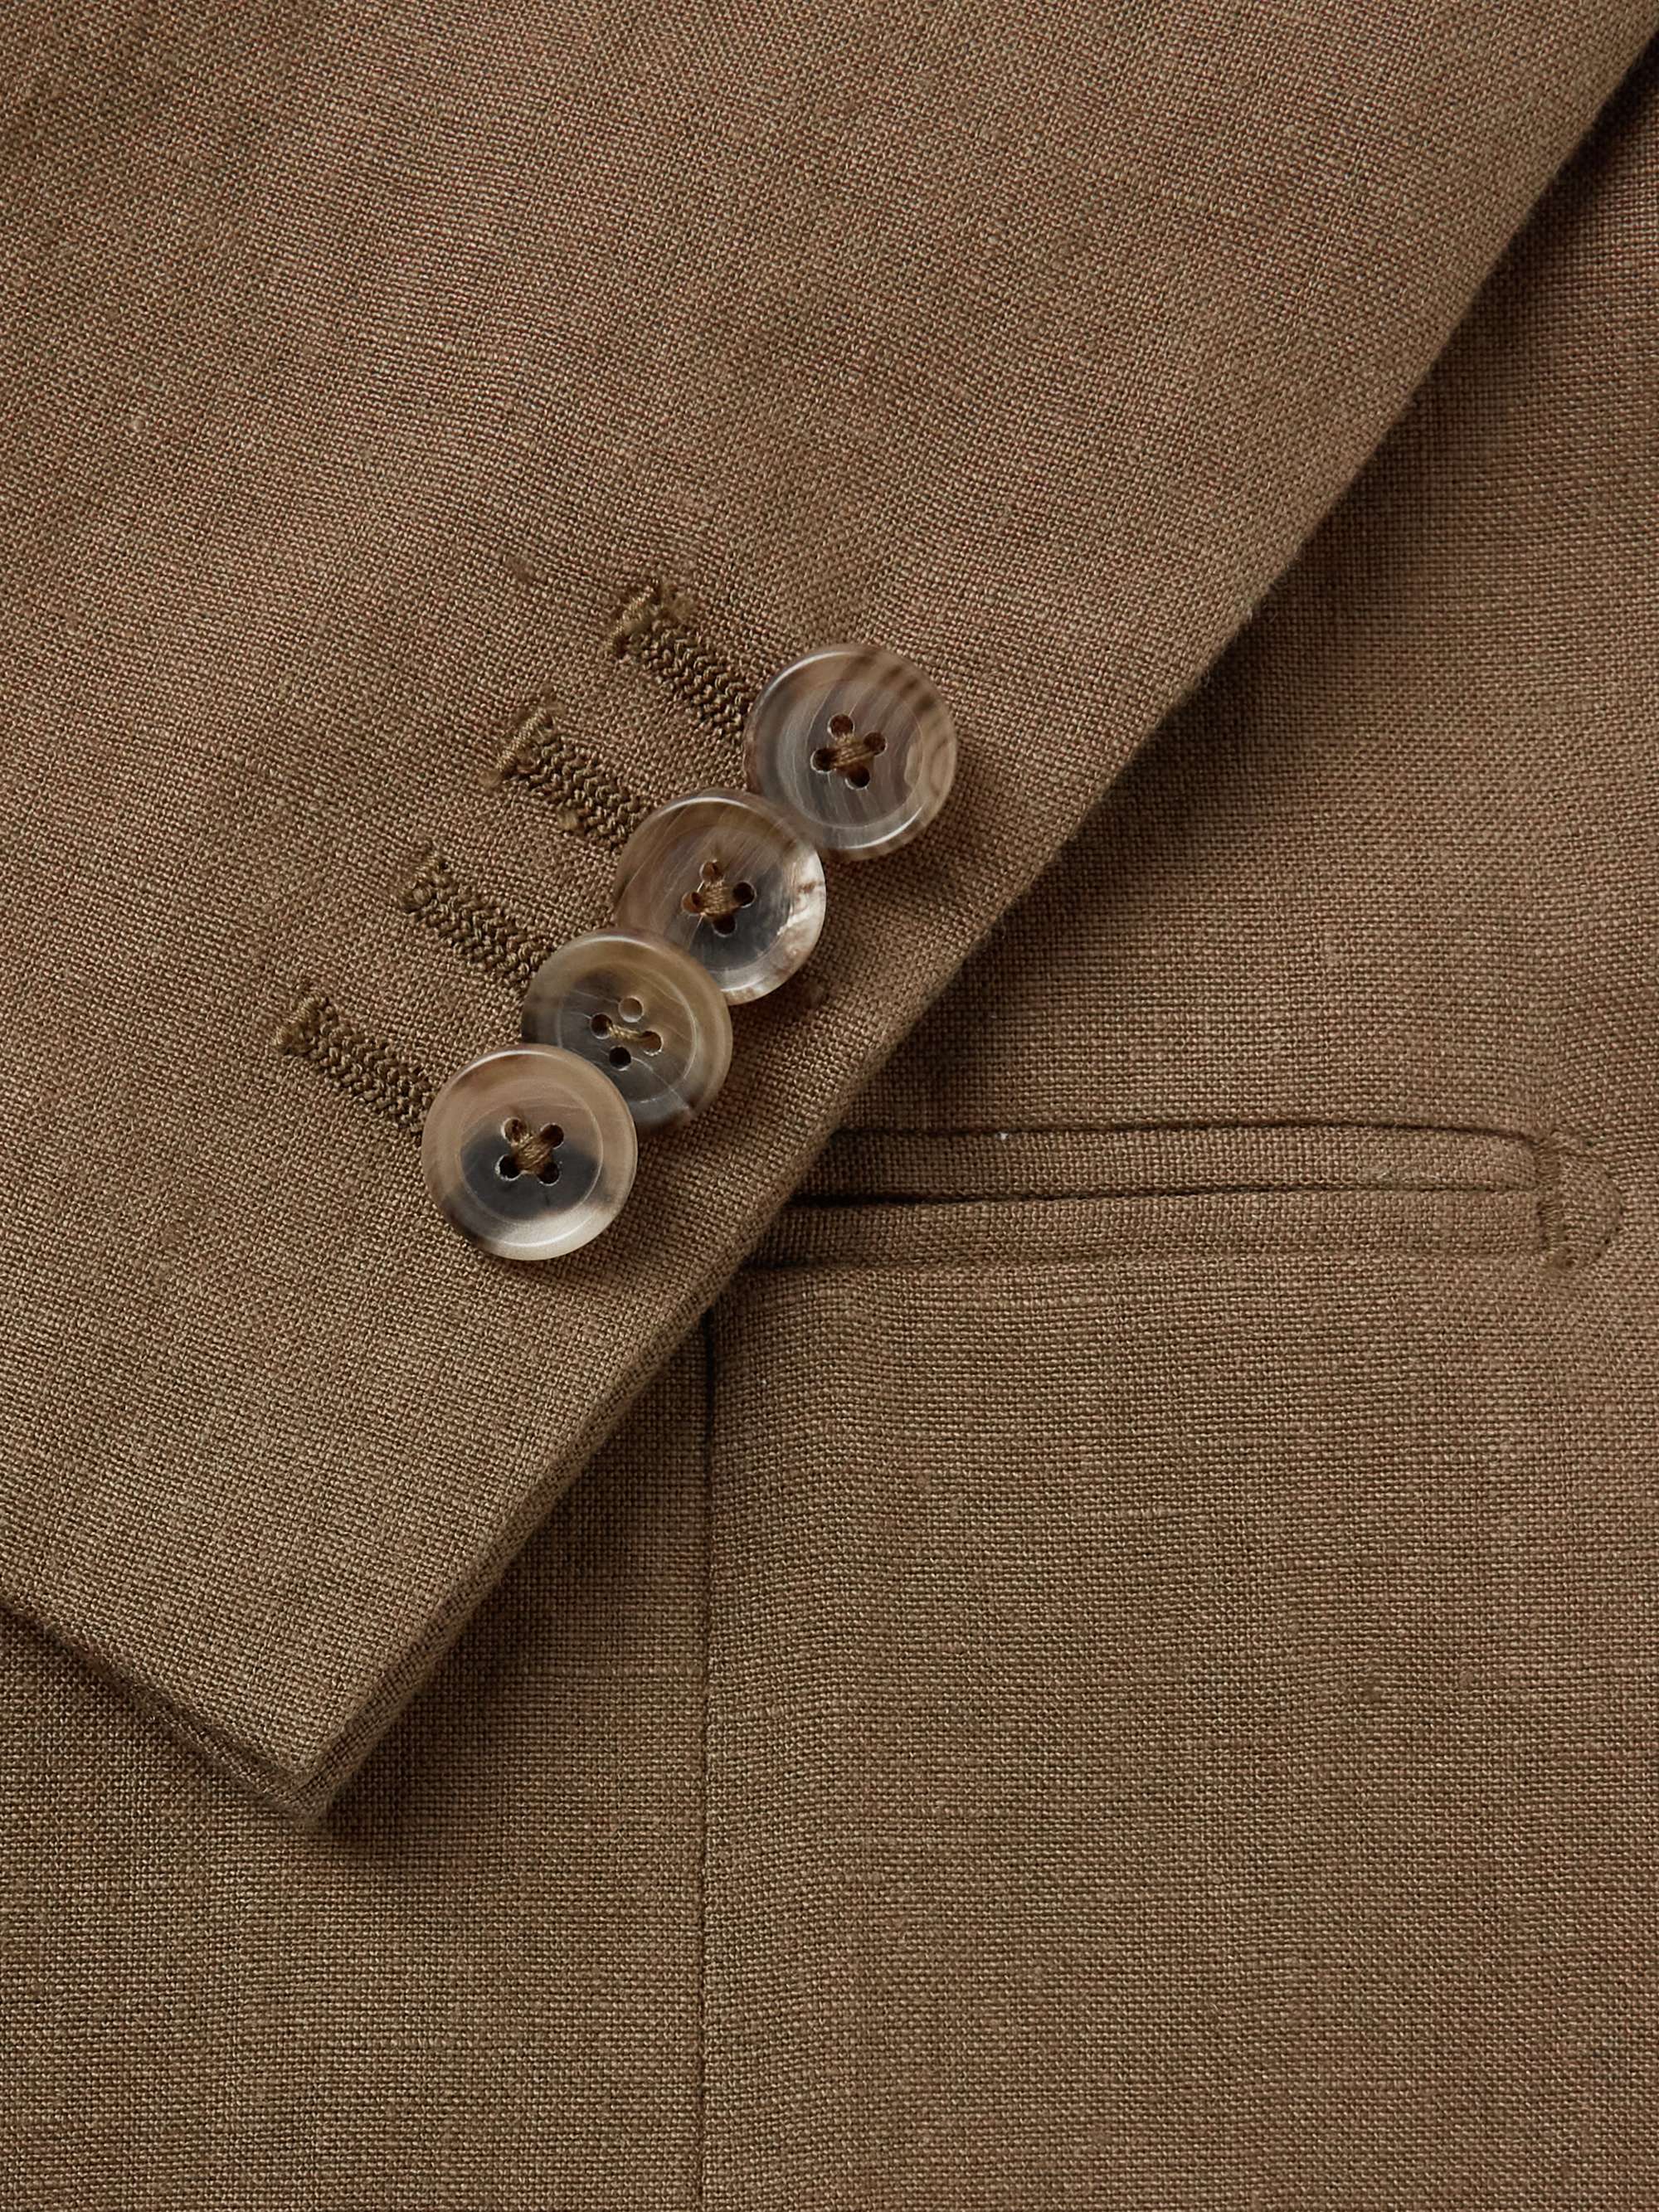 DE PETRILLO Unstructured Linen Suit Jacket